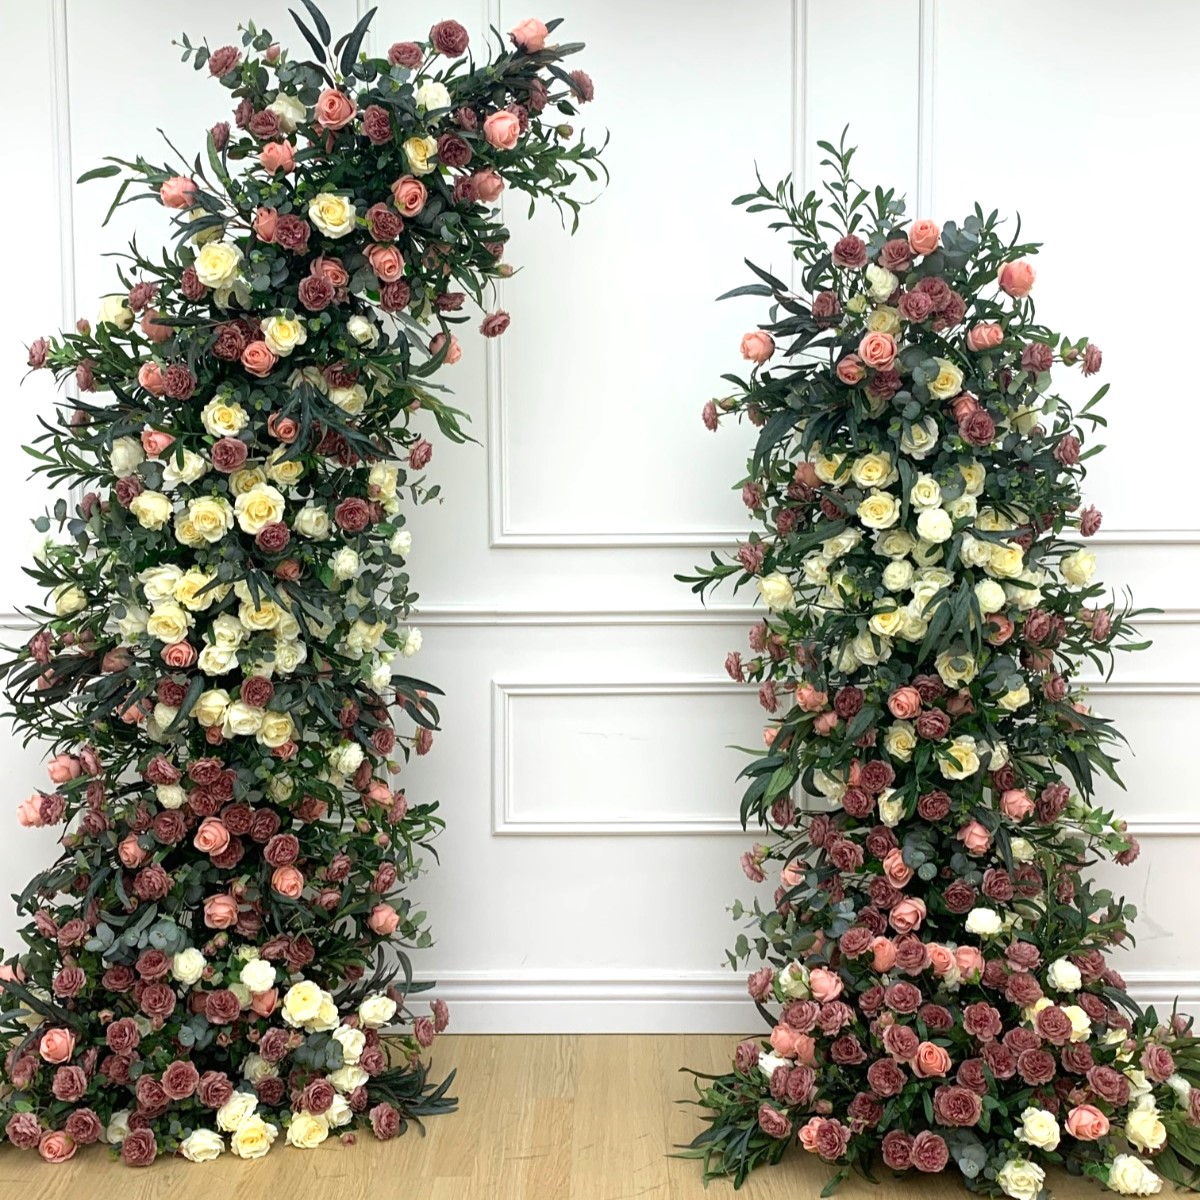 brantford wedding flower arch company